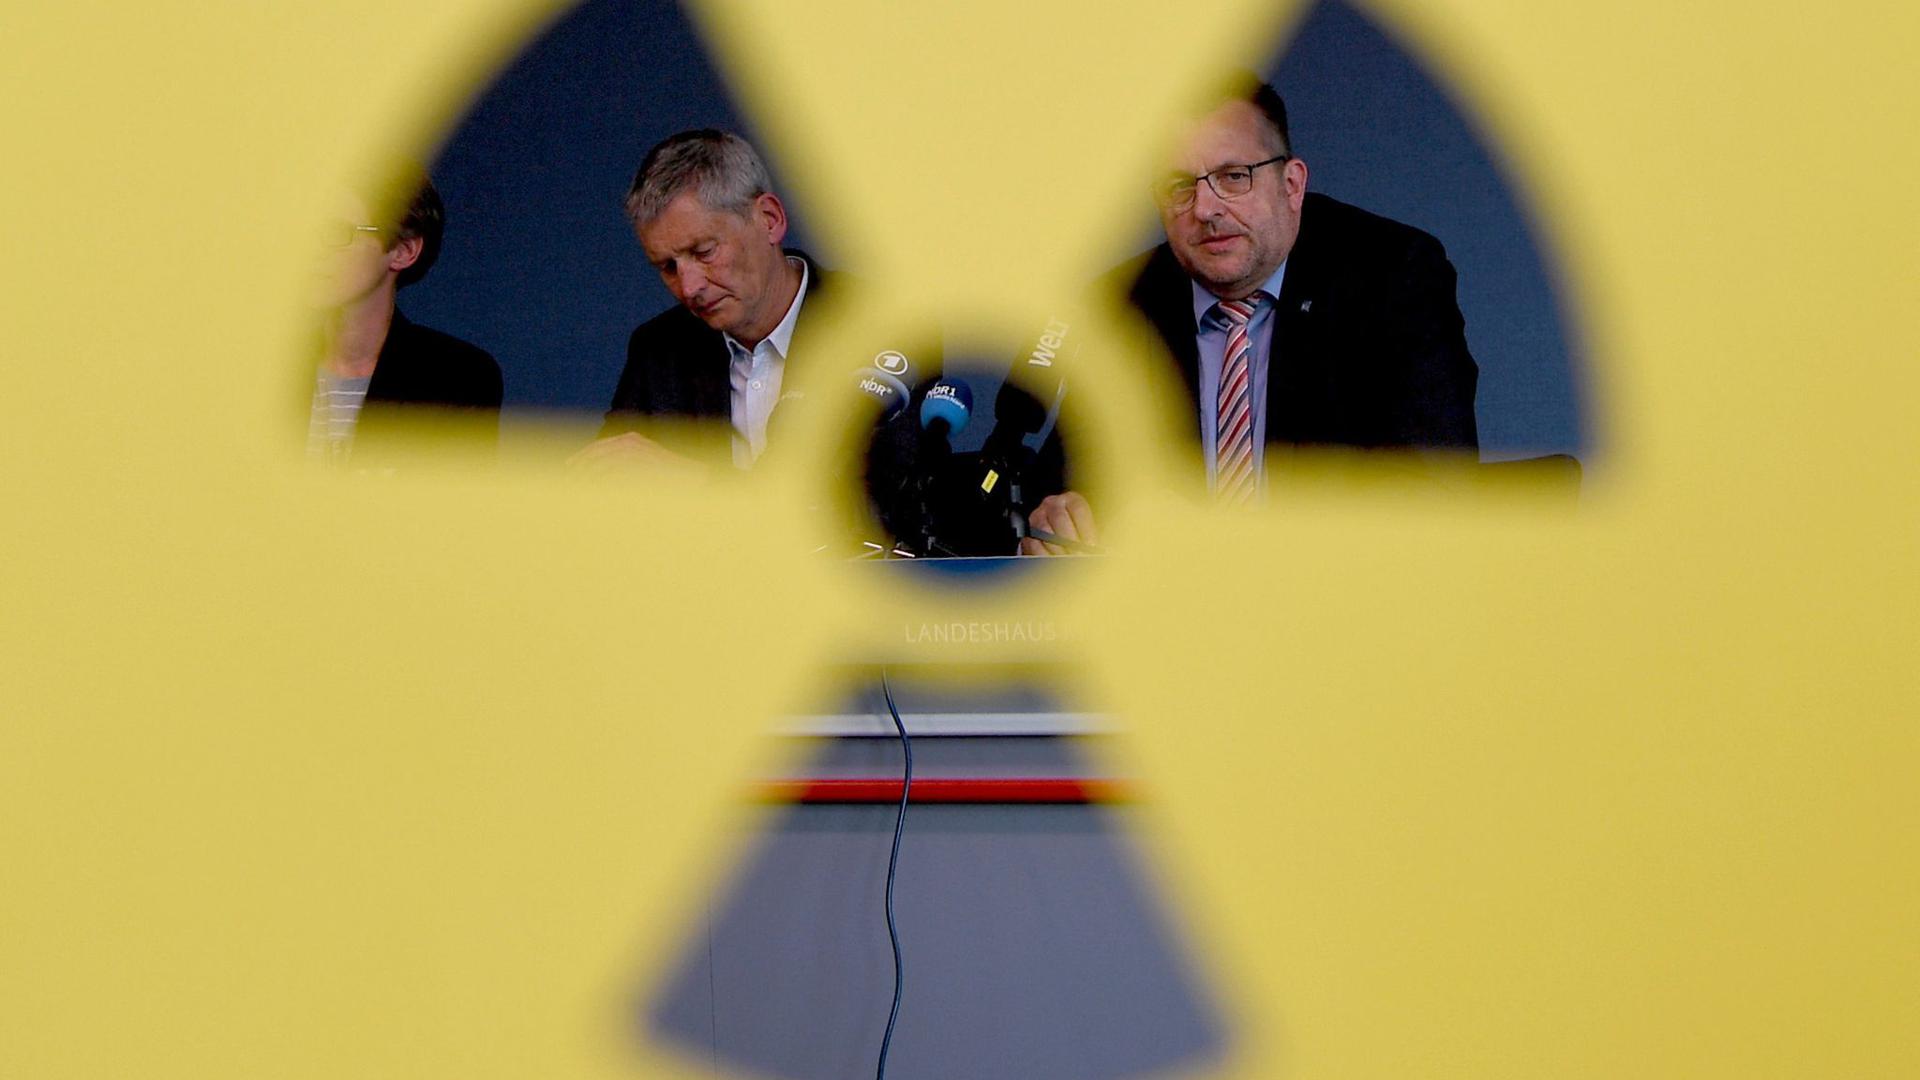 Wolfram König (l), Präsident des Bundesamtes für kerntechnische Entsorgungssicherheit, und Stefan Studt, Geschäftsführer der Bundesgesellschaft für Endlagerung, sitzen bei einer Pressekonferenz nebeneinander.